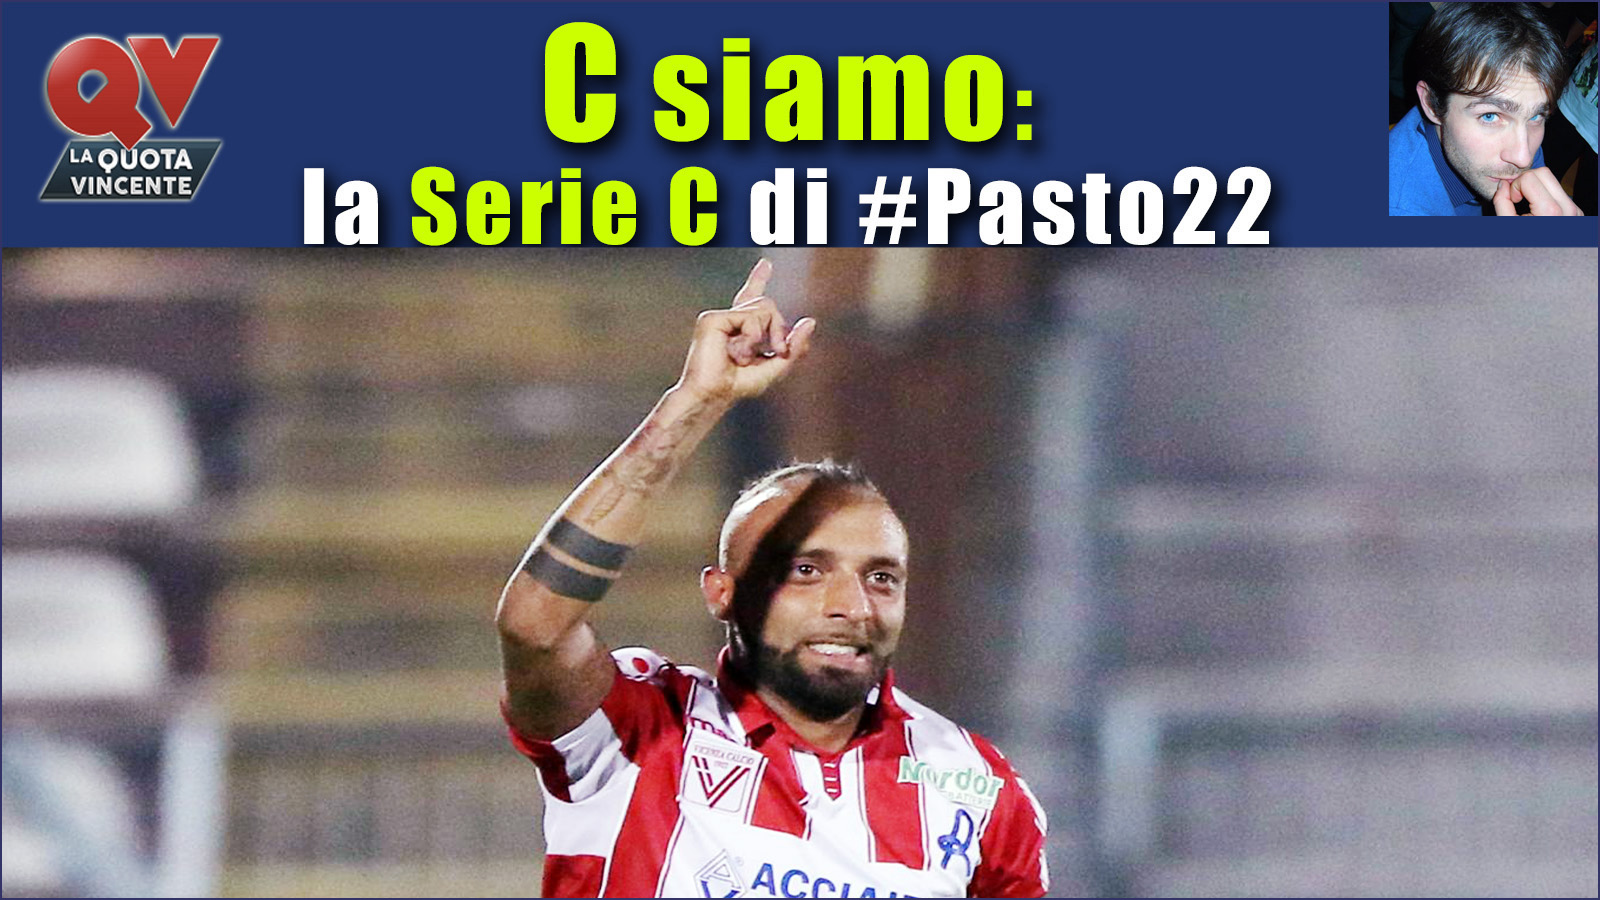 Pronostici Serie C domenica 15 ottobre: #Csiamo, il blog di #Pasto22